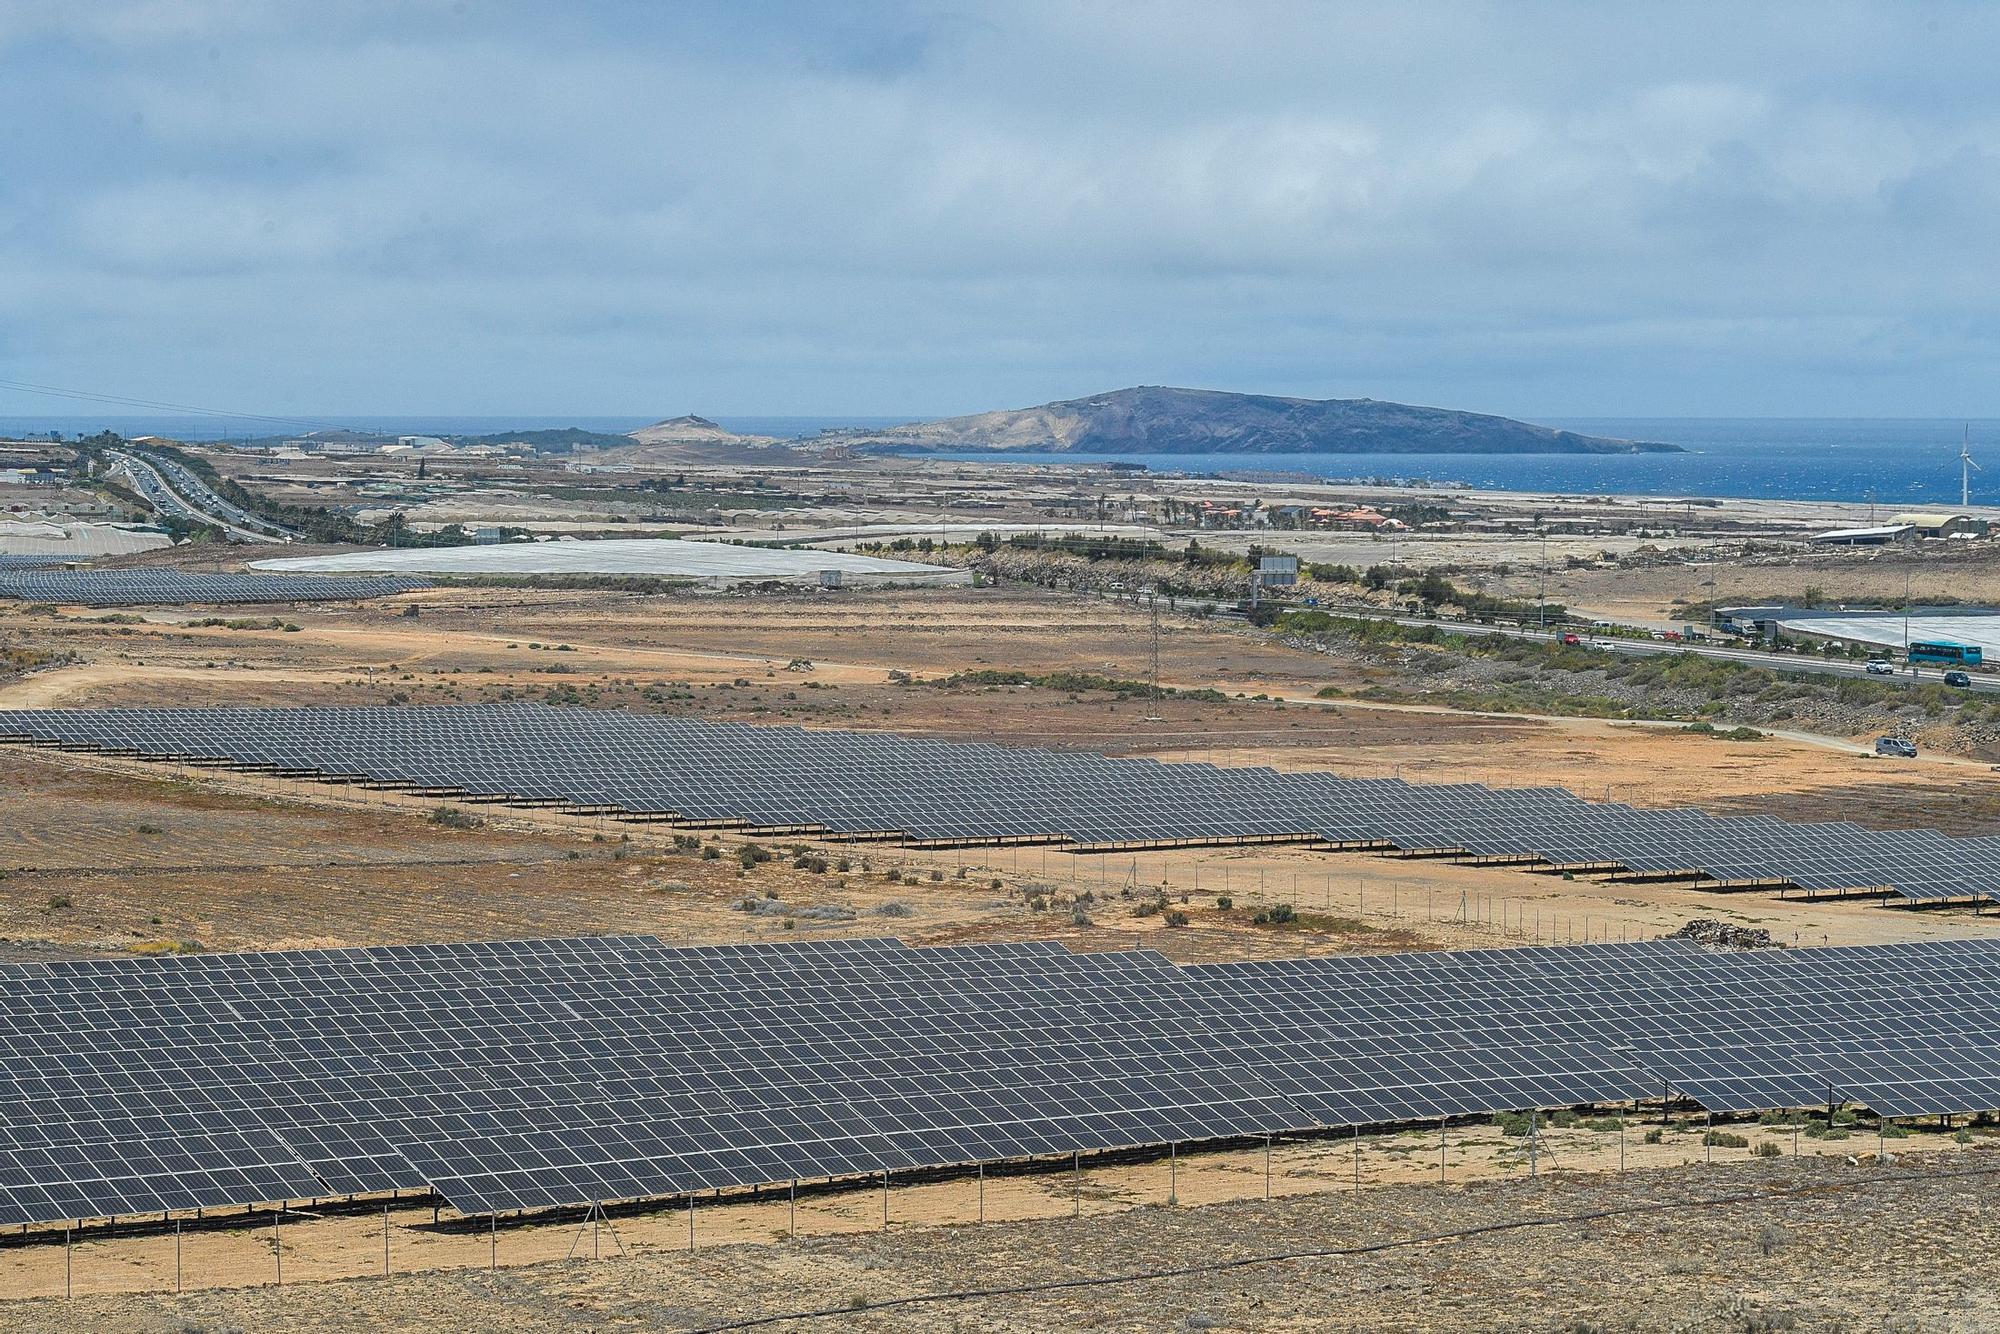 Cinco nuevas plantas fotovoltaicas de Naturgy en Agüimes